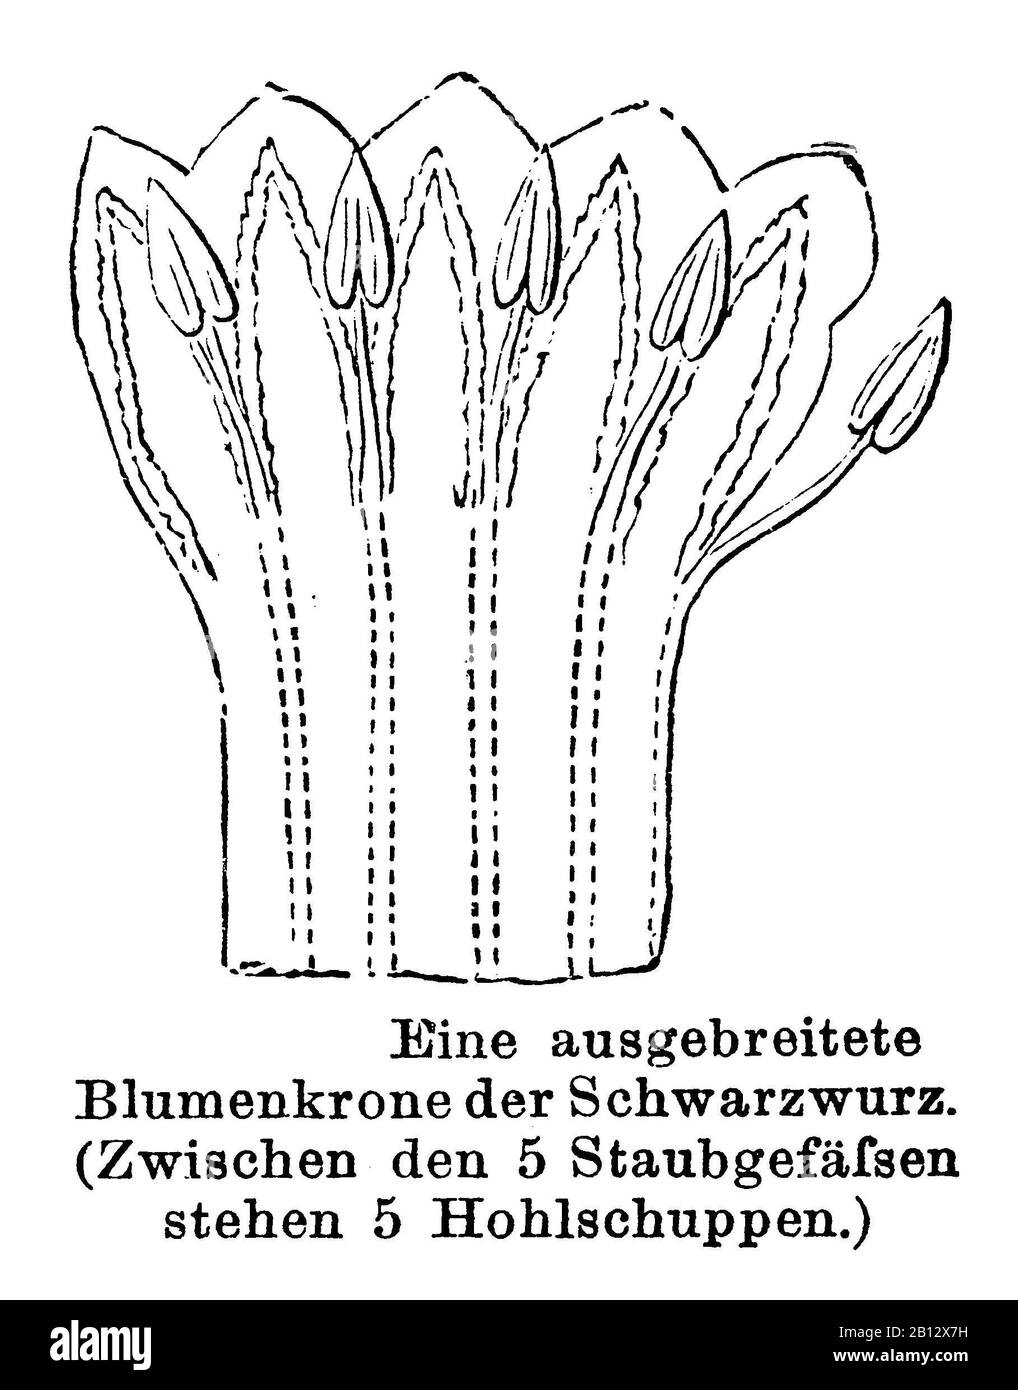 Comfrey, Symphytum officinale, Schwarzwurz: Ausgebreitete Blumenkrone, Consoude officinale, anonym (libro di botanica, 1884) Foto Stock